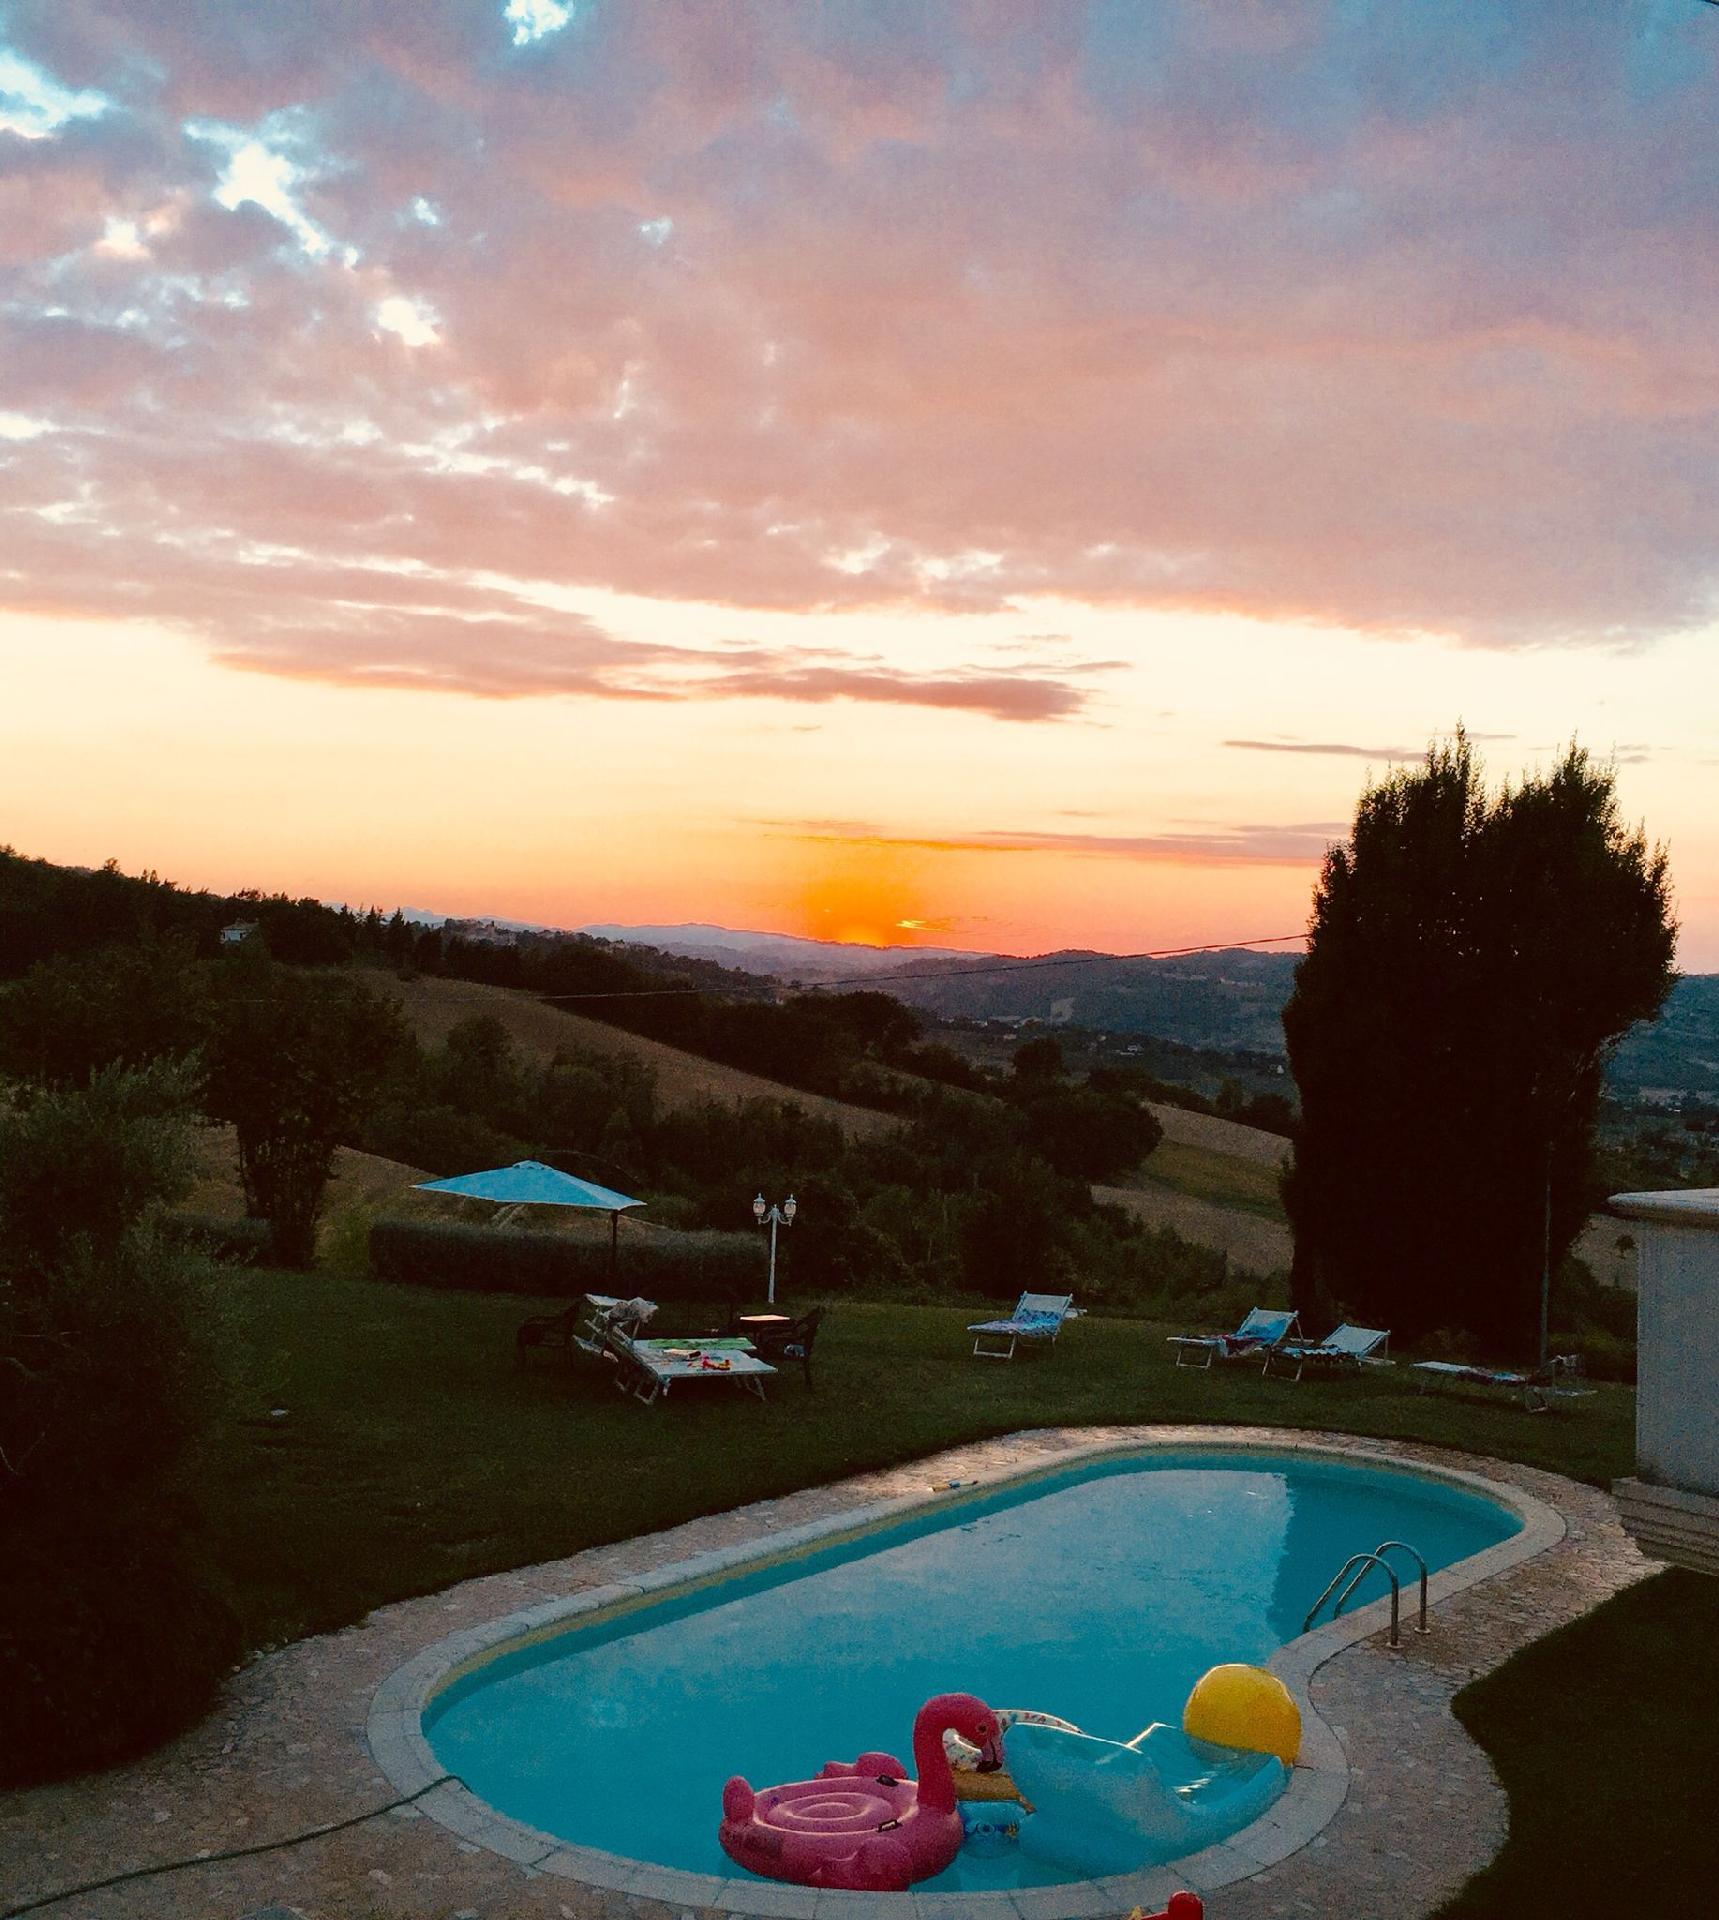 Ferienwohnung in herrlicher Villa auf dem Land mit Ferienhaus in Italien